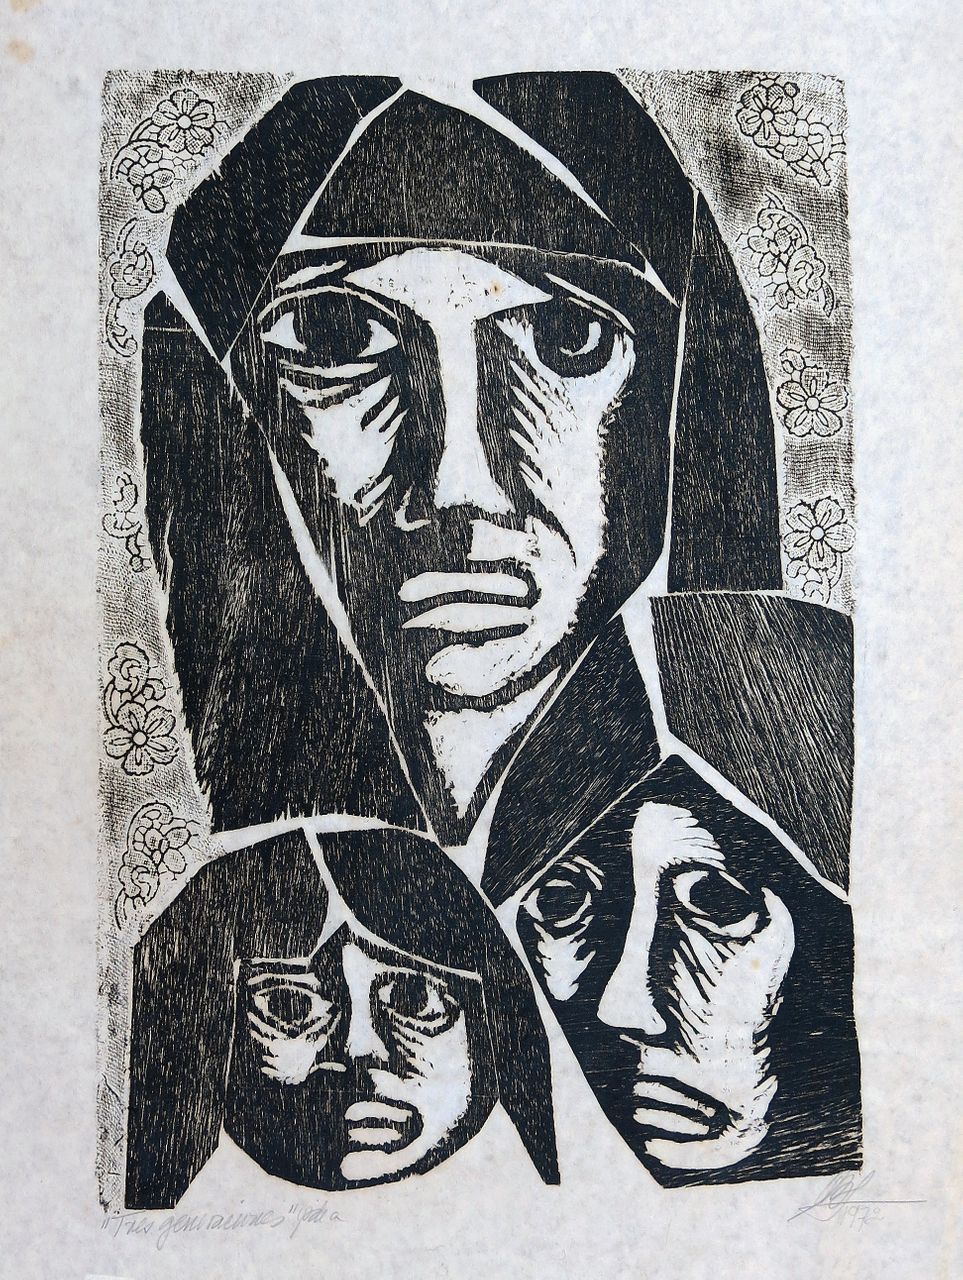 Tres generaciones (Three generations), 1972 | Woodblock print on paper 45 x 55 cm